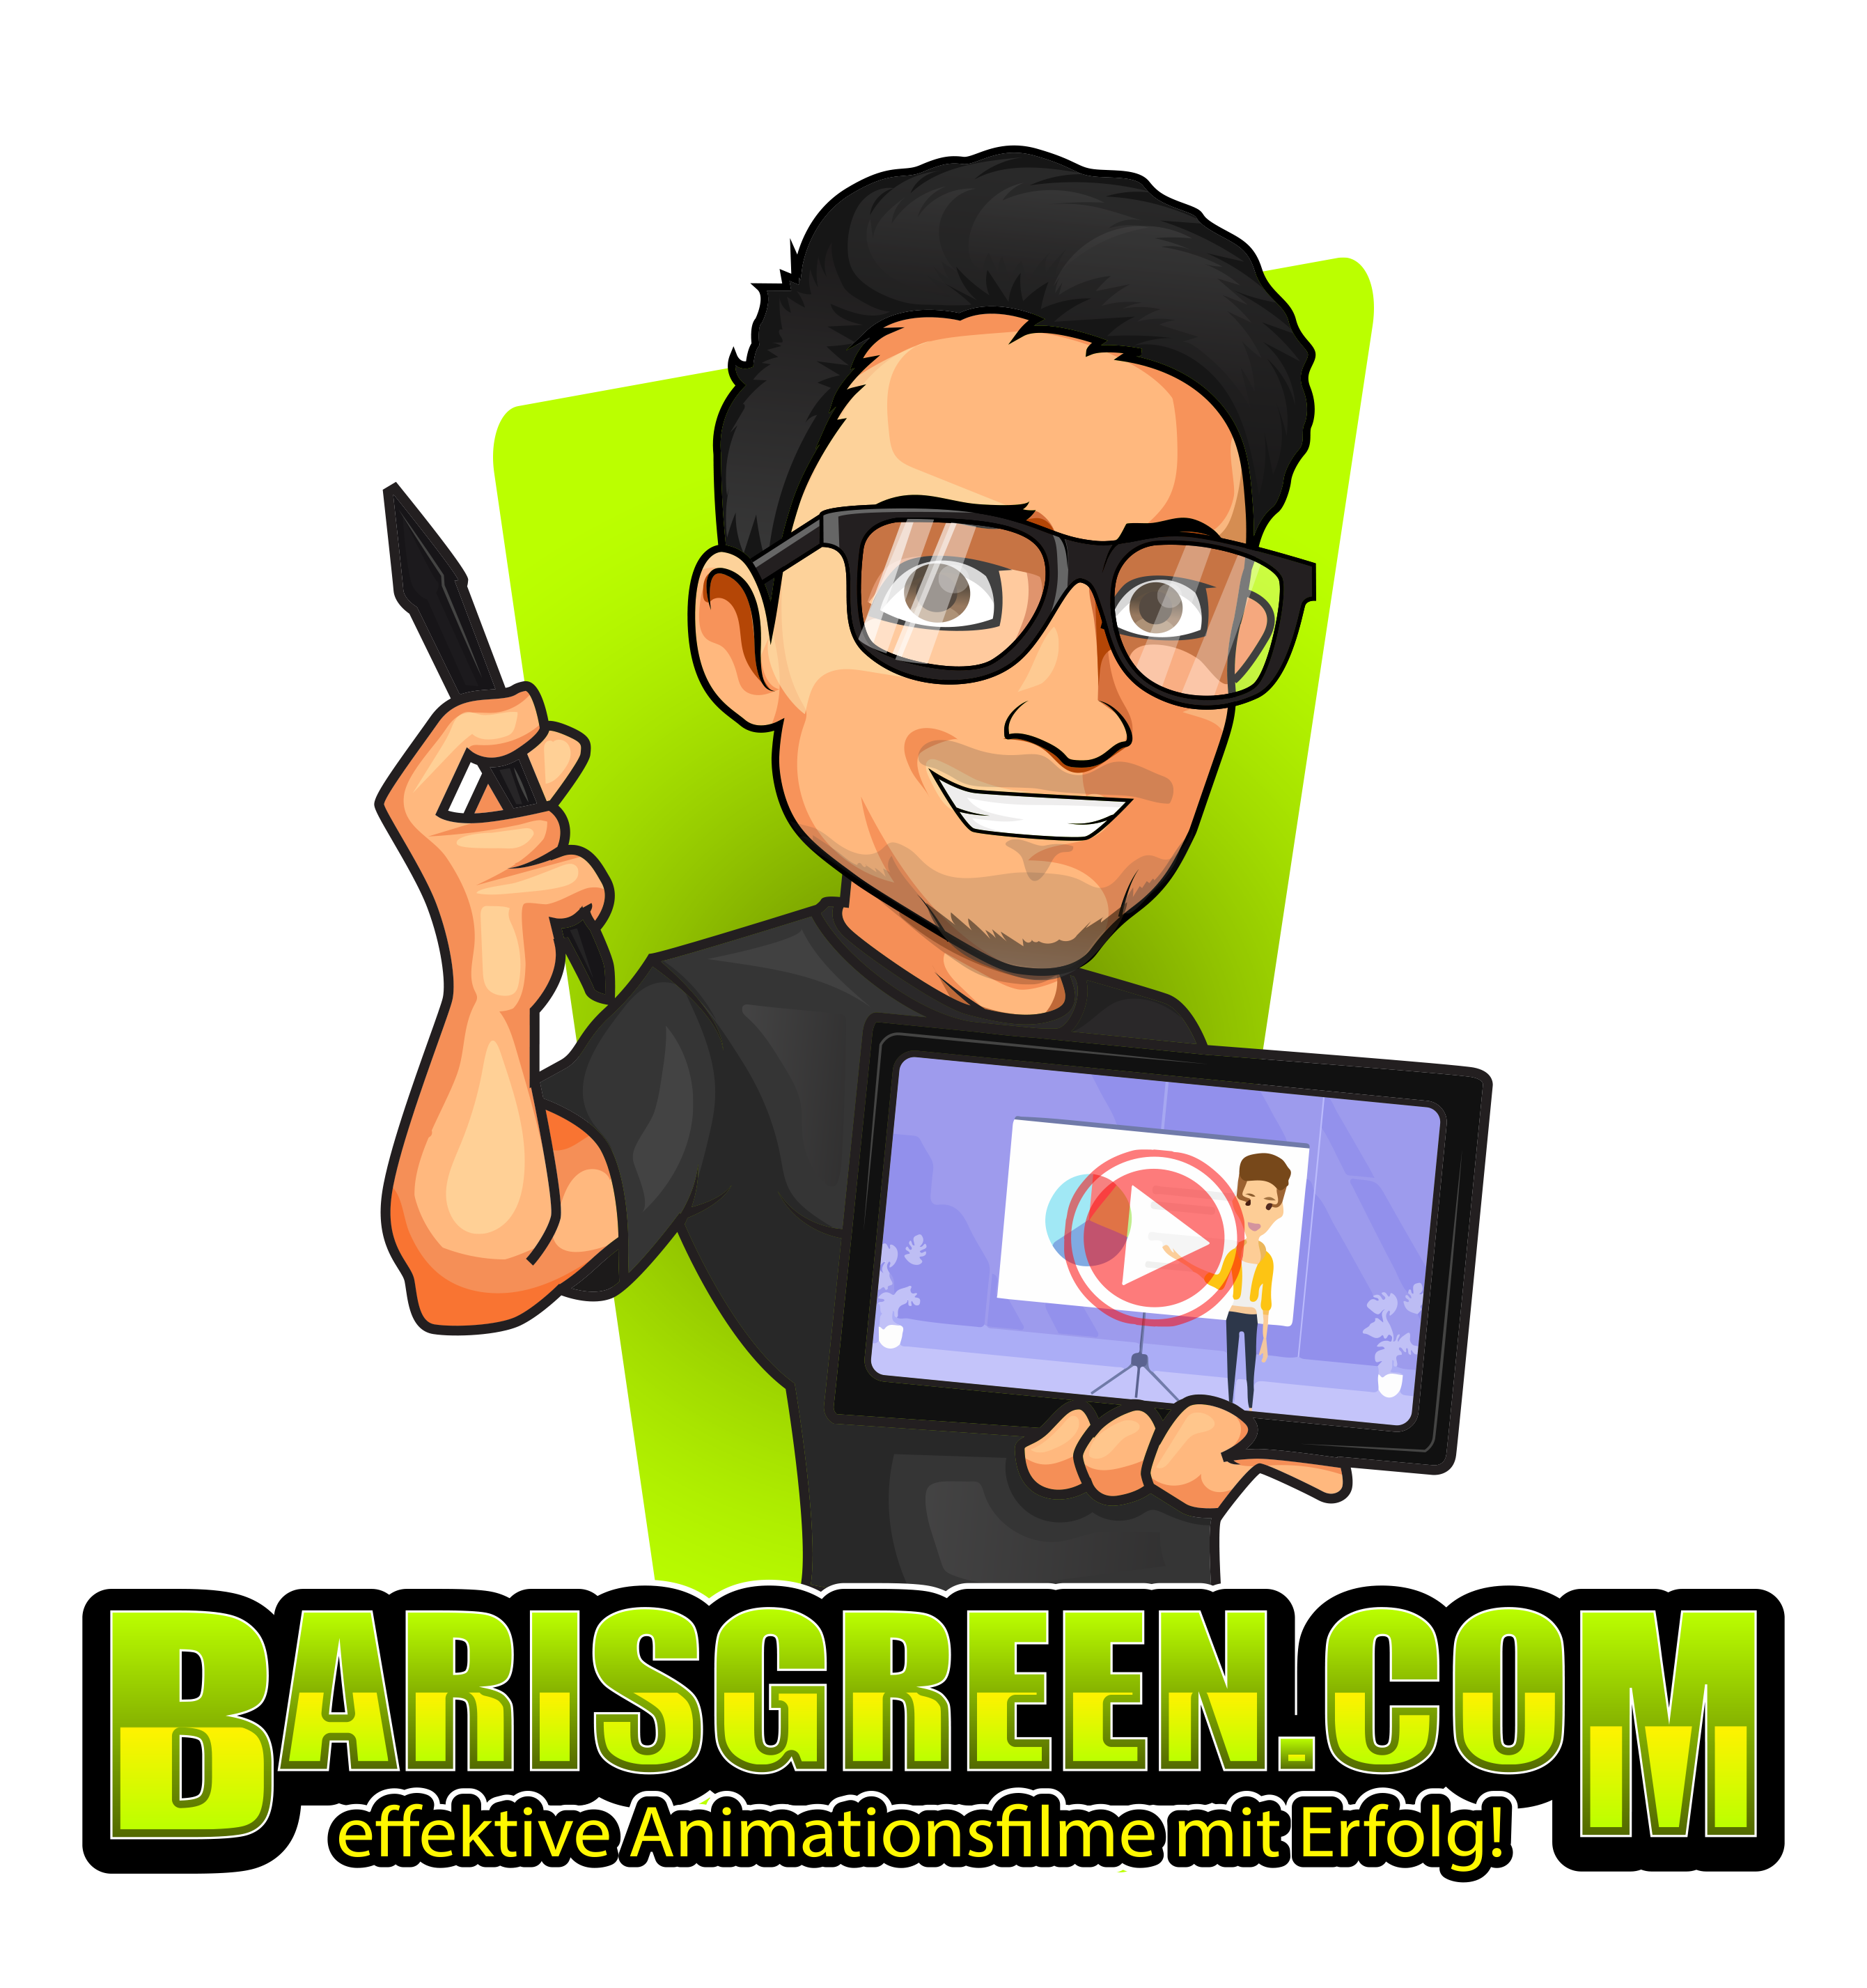 Barisgreen.com